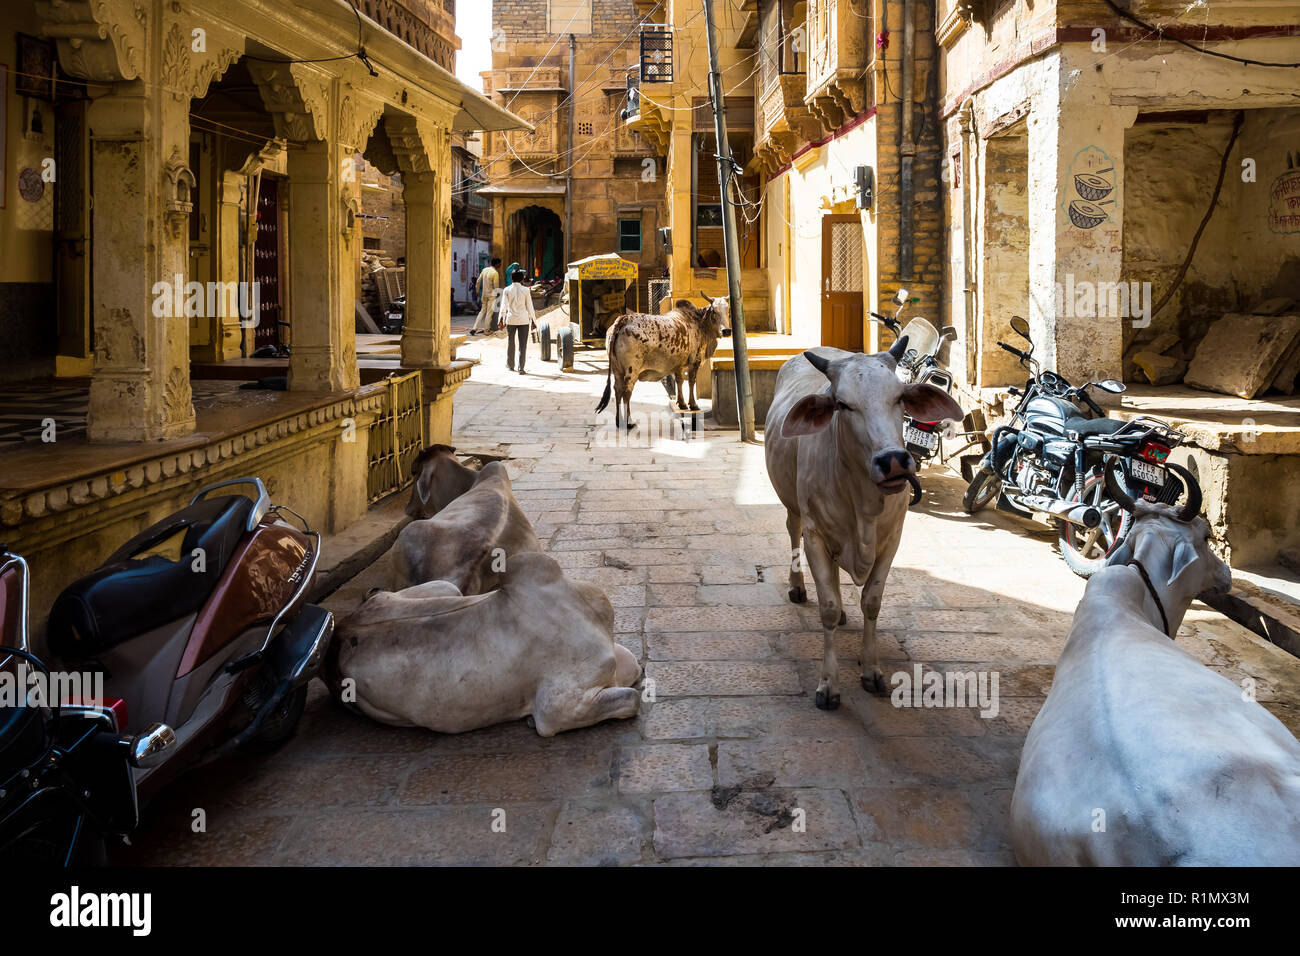 Les vaches sur la rue dans Jaisalmer. L'Inde Juin 2018 Banque D'Images